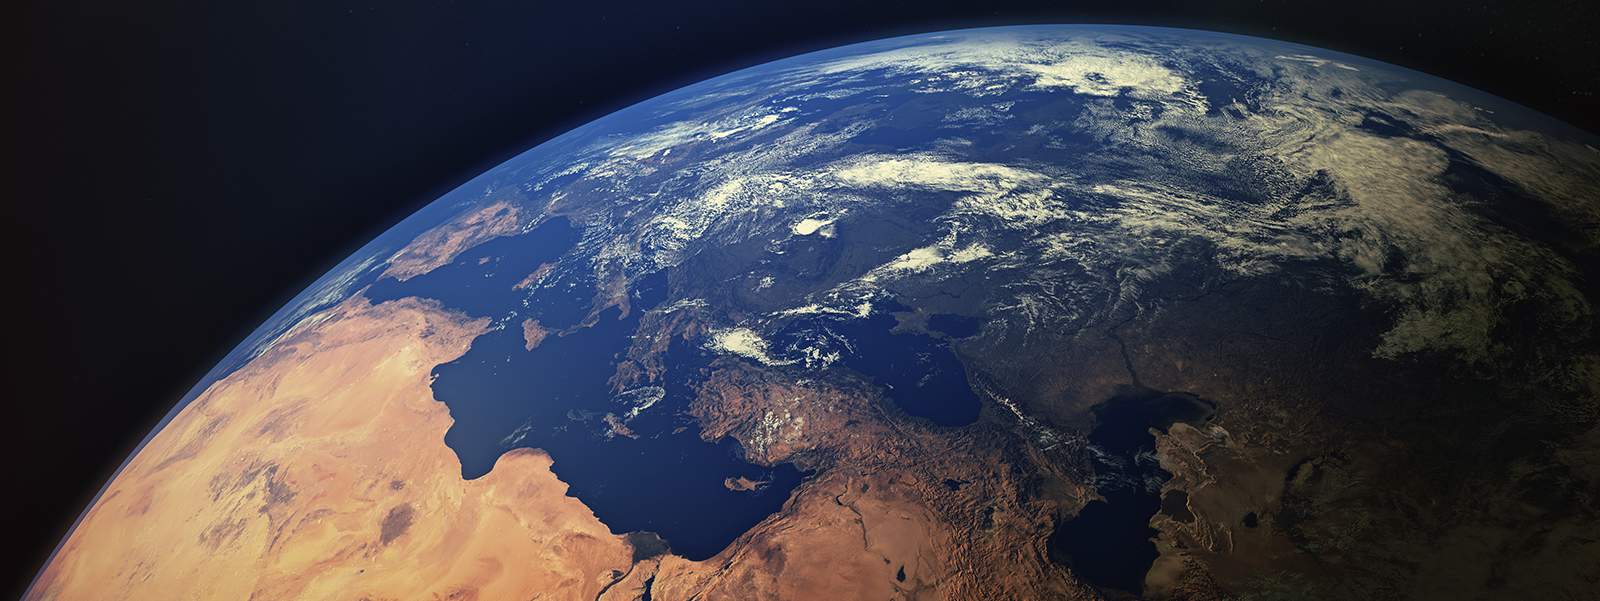 Immagine scenica della terra vista dallo spazio